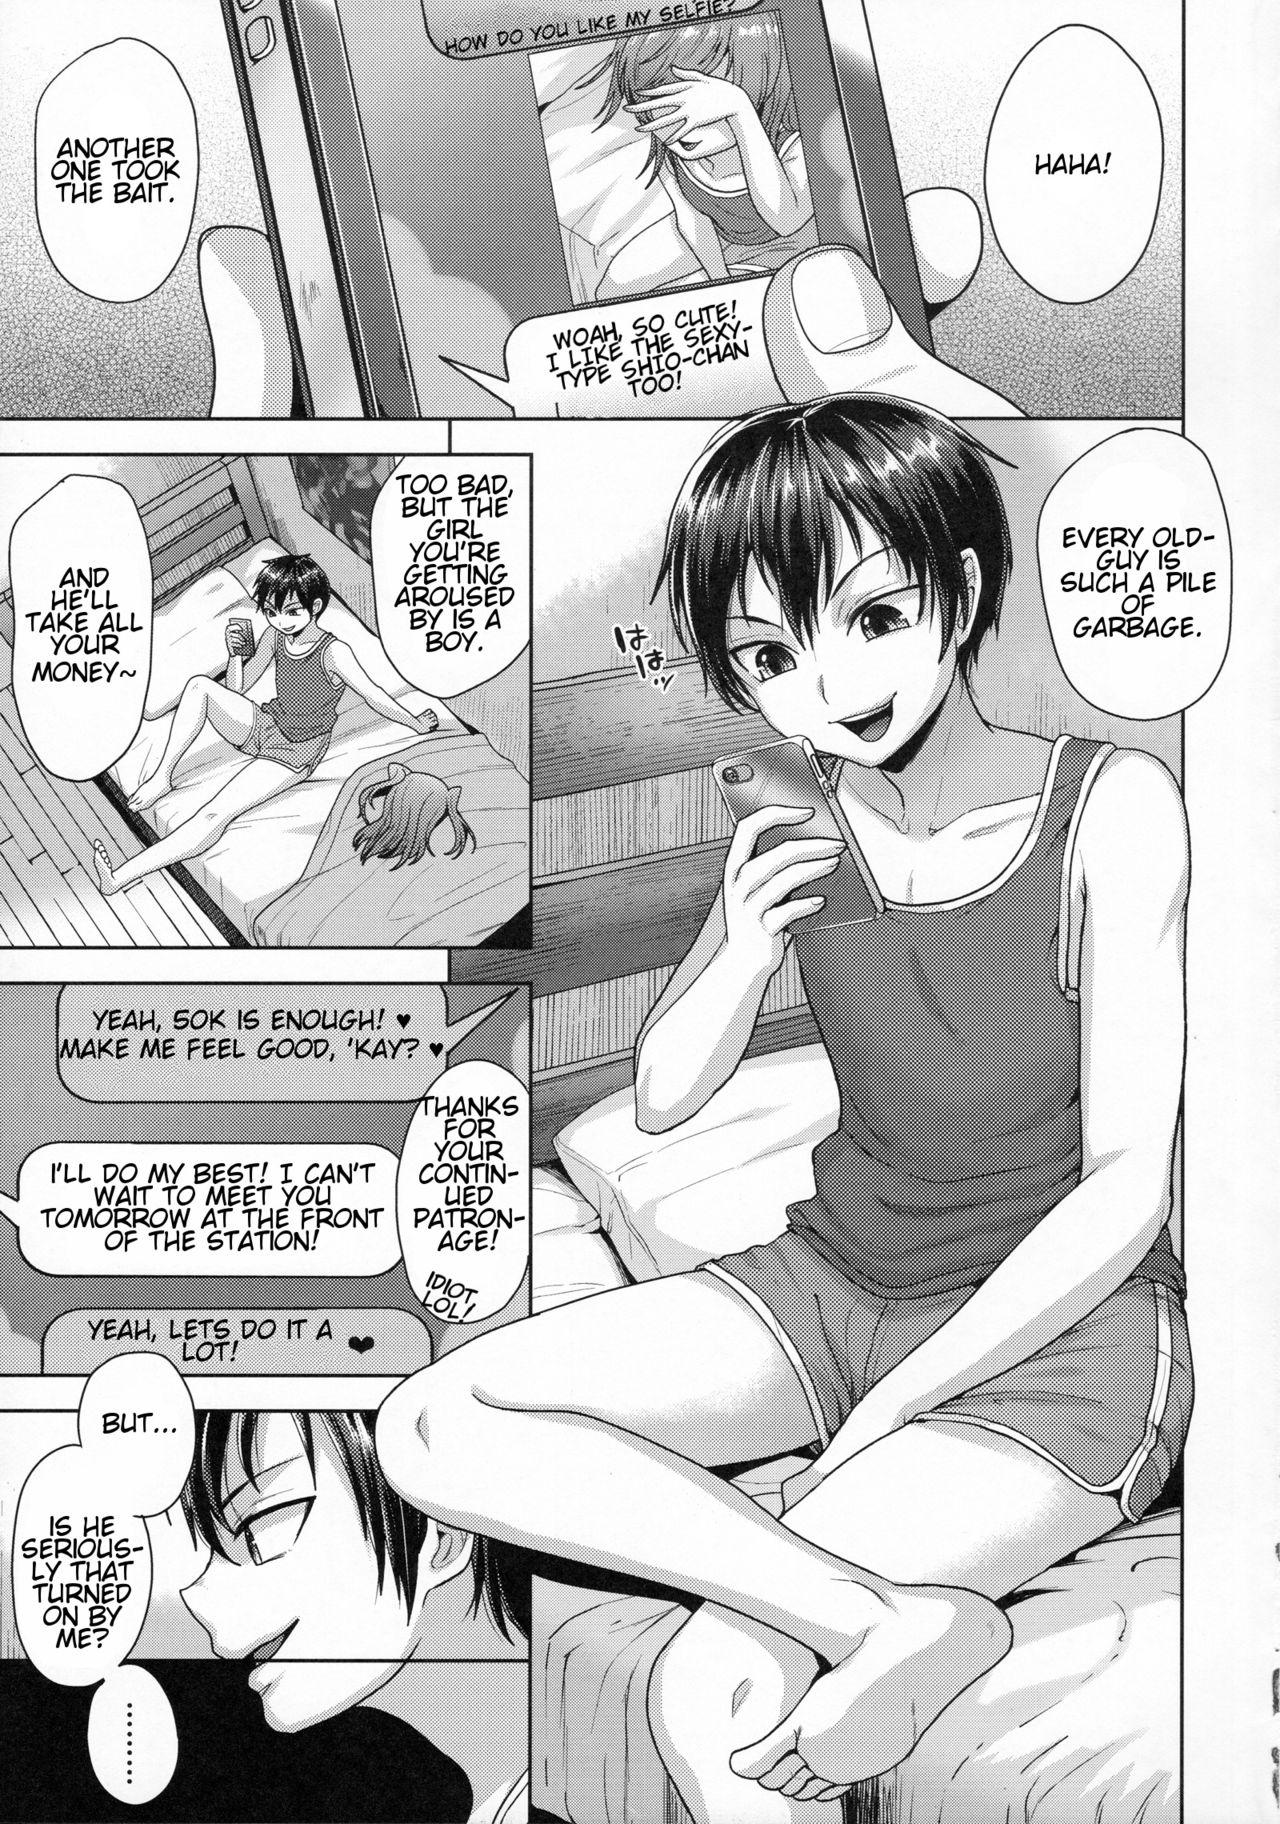 Stretching Sayonara Itsumodoori Virginity - Page 4